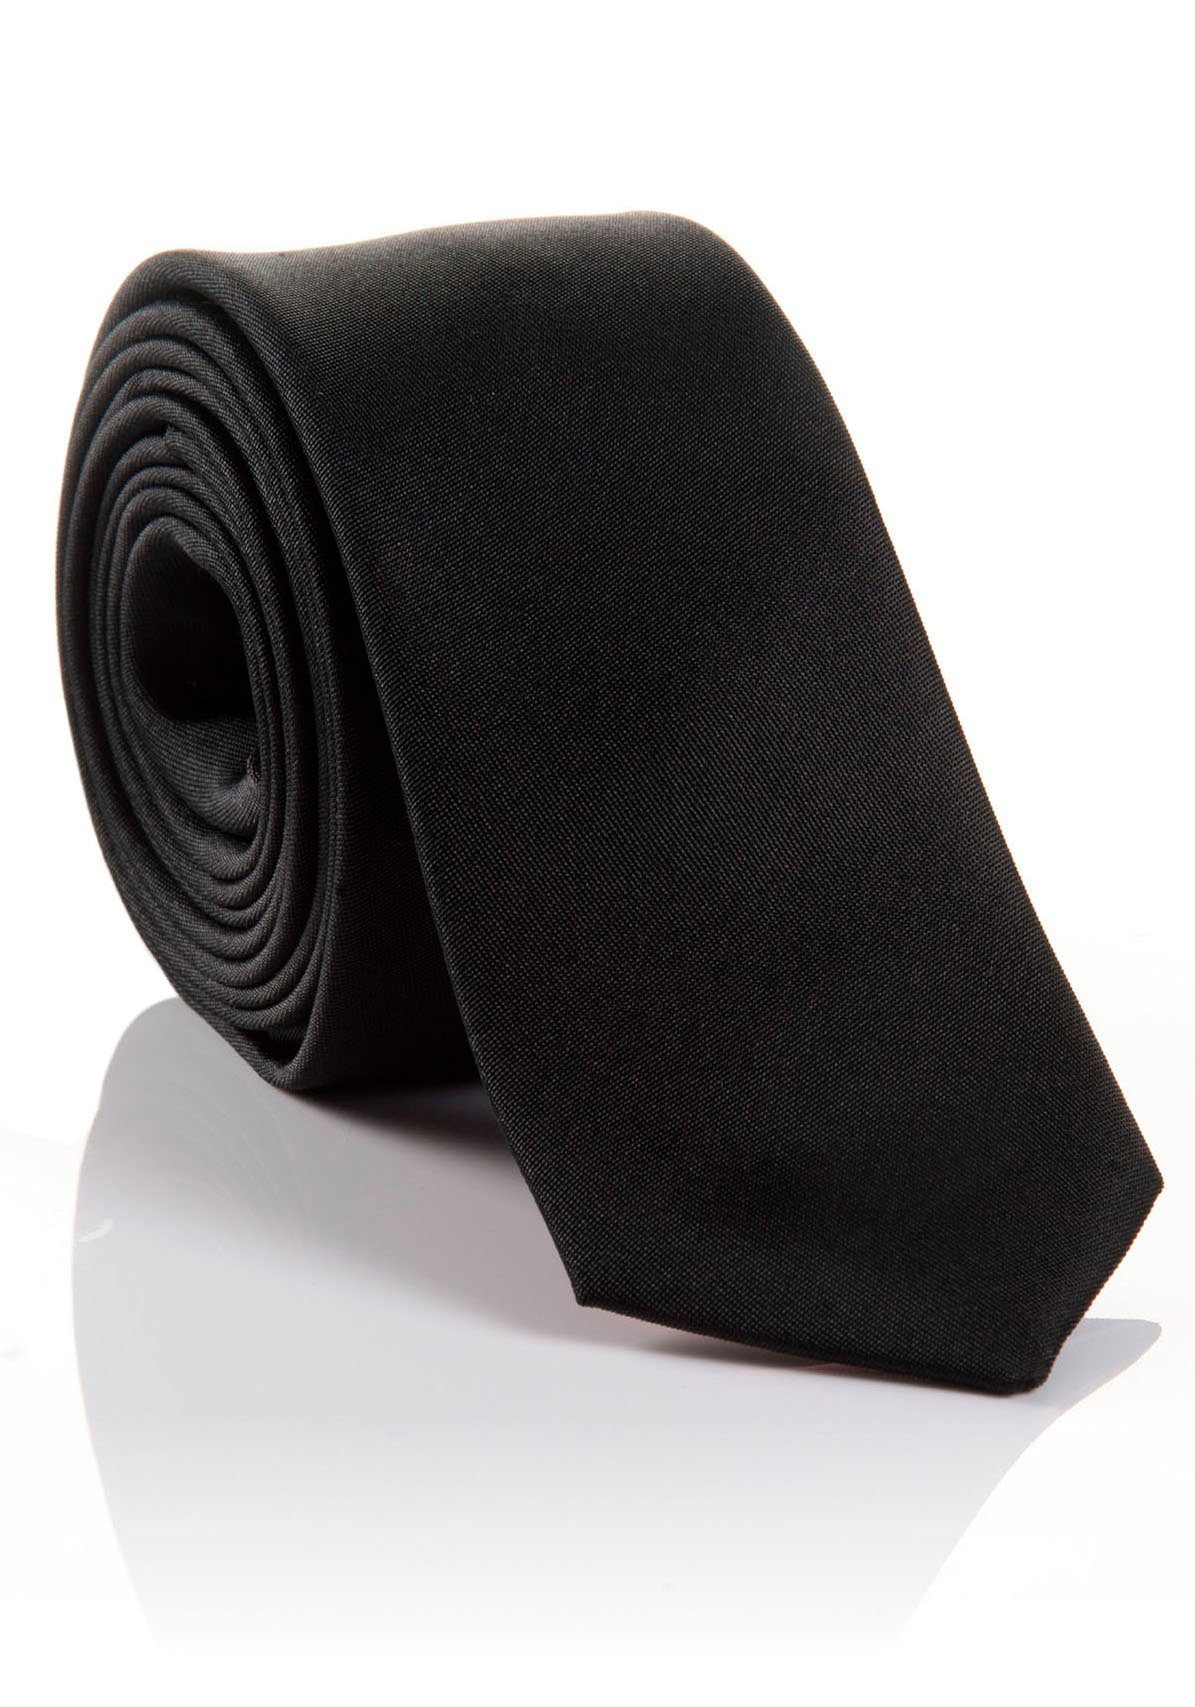 Hochwertig LORENZO Tragekomfort MONTI hohem mit verarbeitete Krawatte Seidenkrawatte black